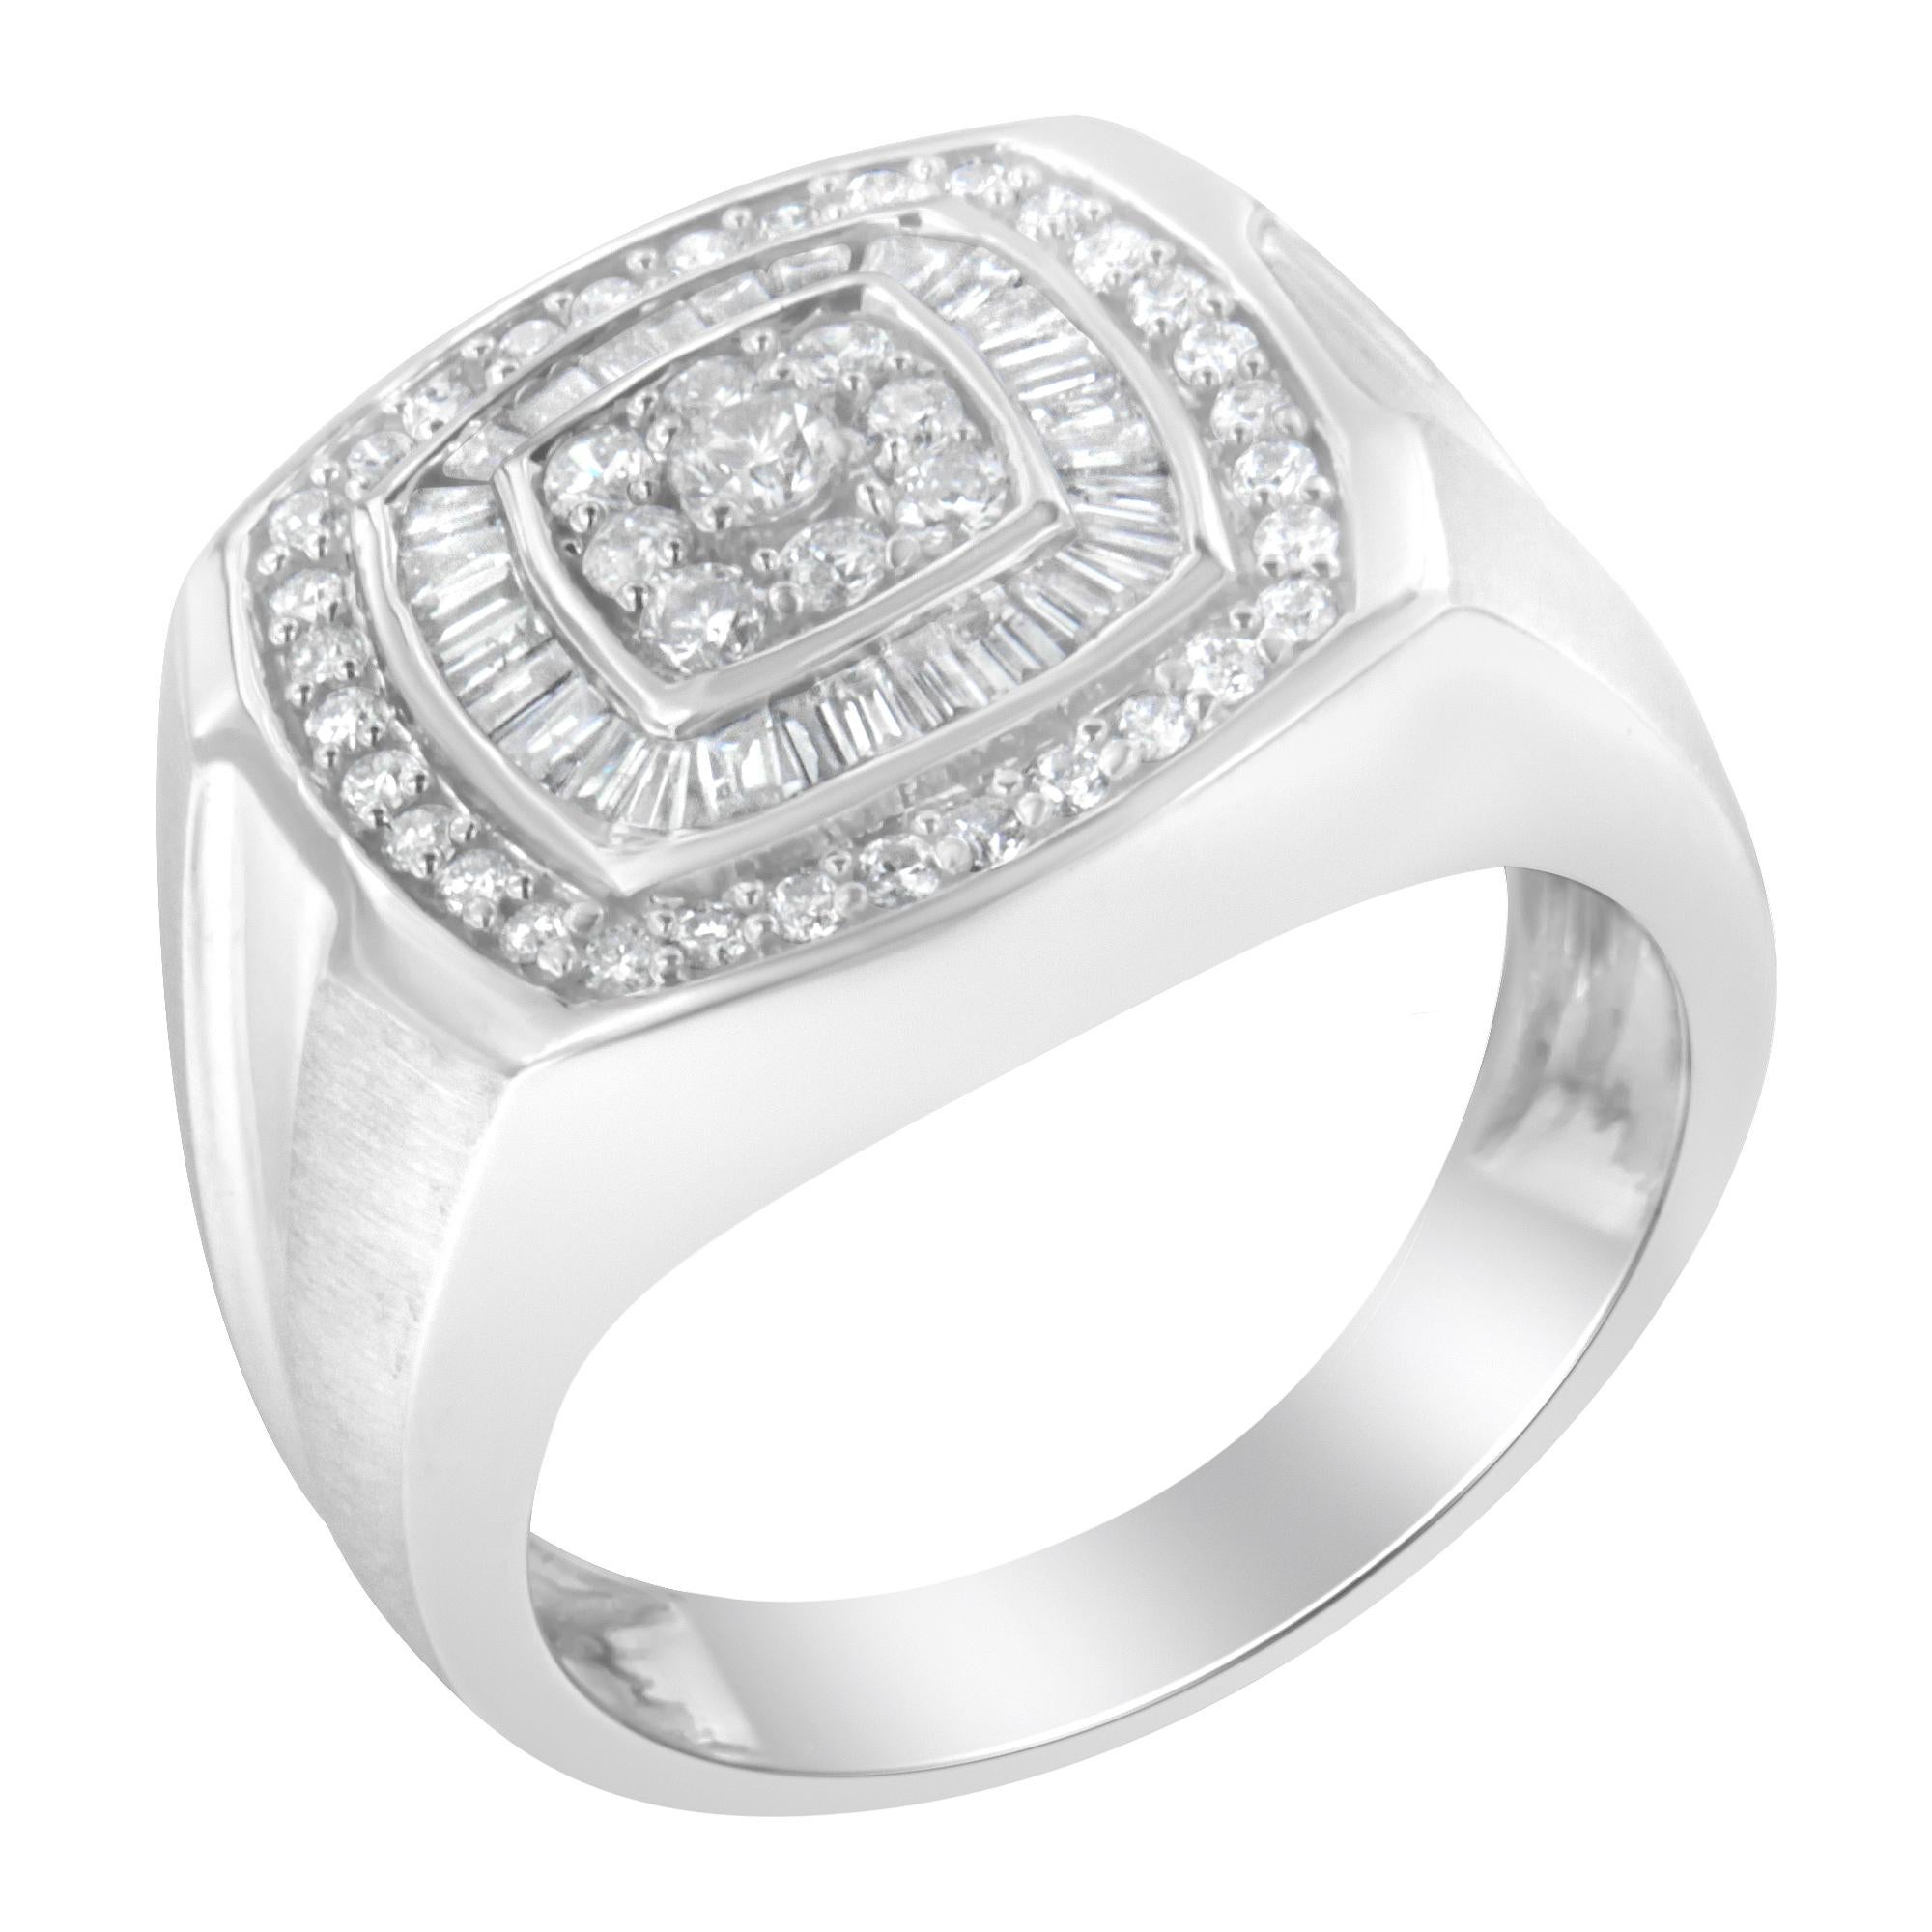 Créé en or blanc 14 carats, ce bracelet à diamants pour homme est élégant et classique. Le haut de l'élégant anneau présente un design carré arrondi. Le centre est orné de neuf diamants ronds sertis à la broche dans un motif carré. De plus, les